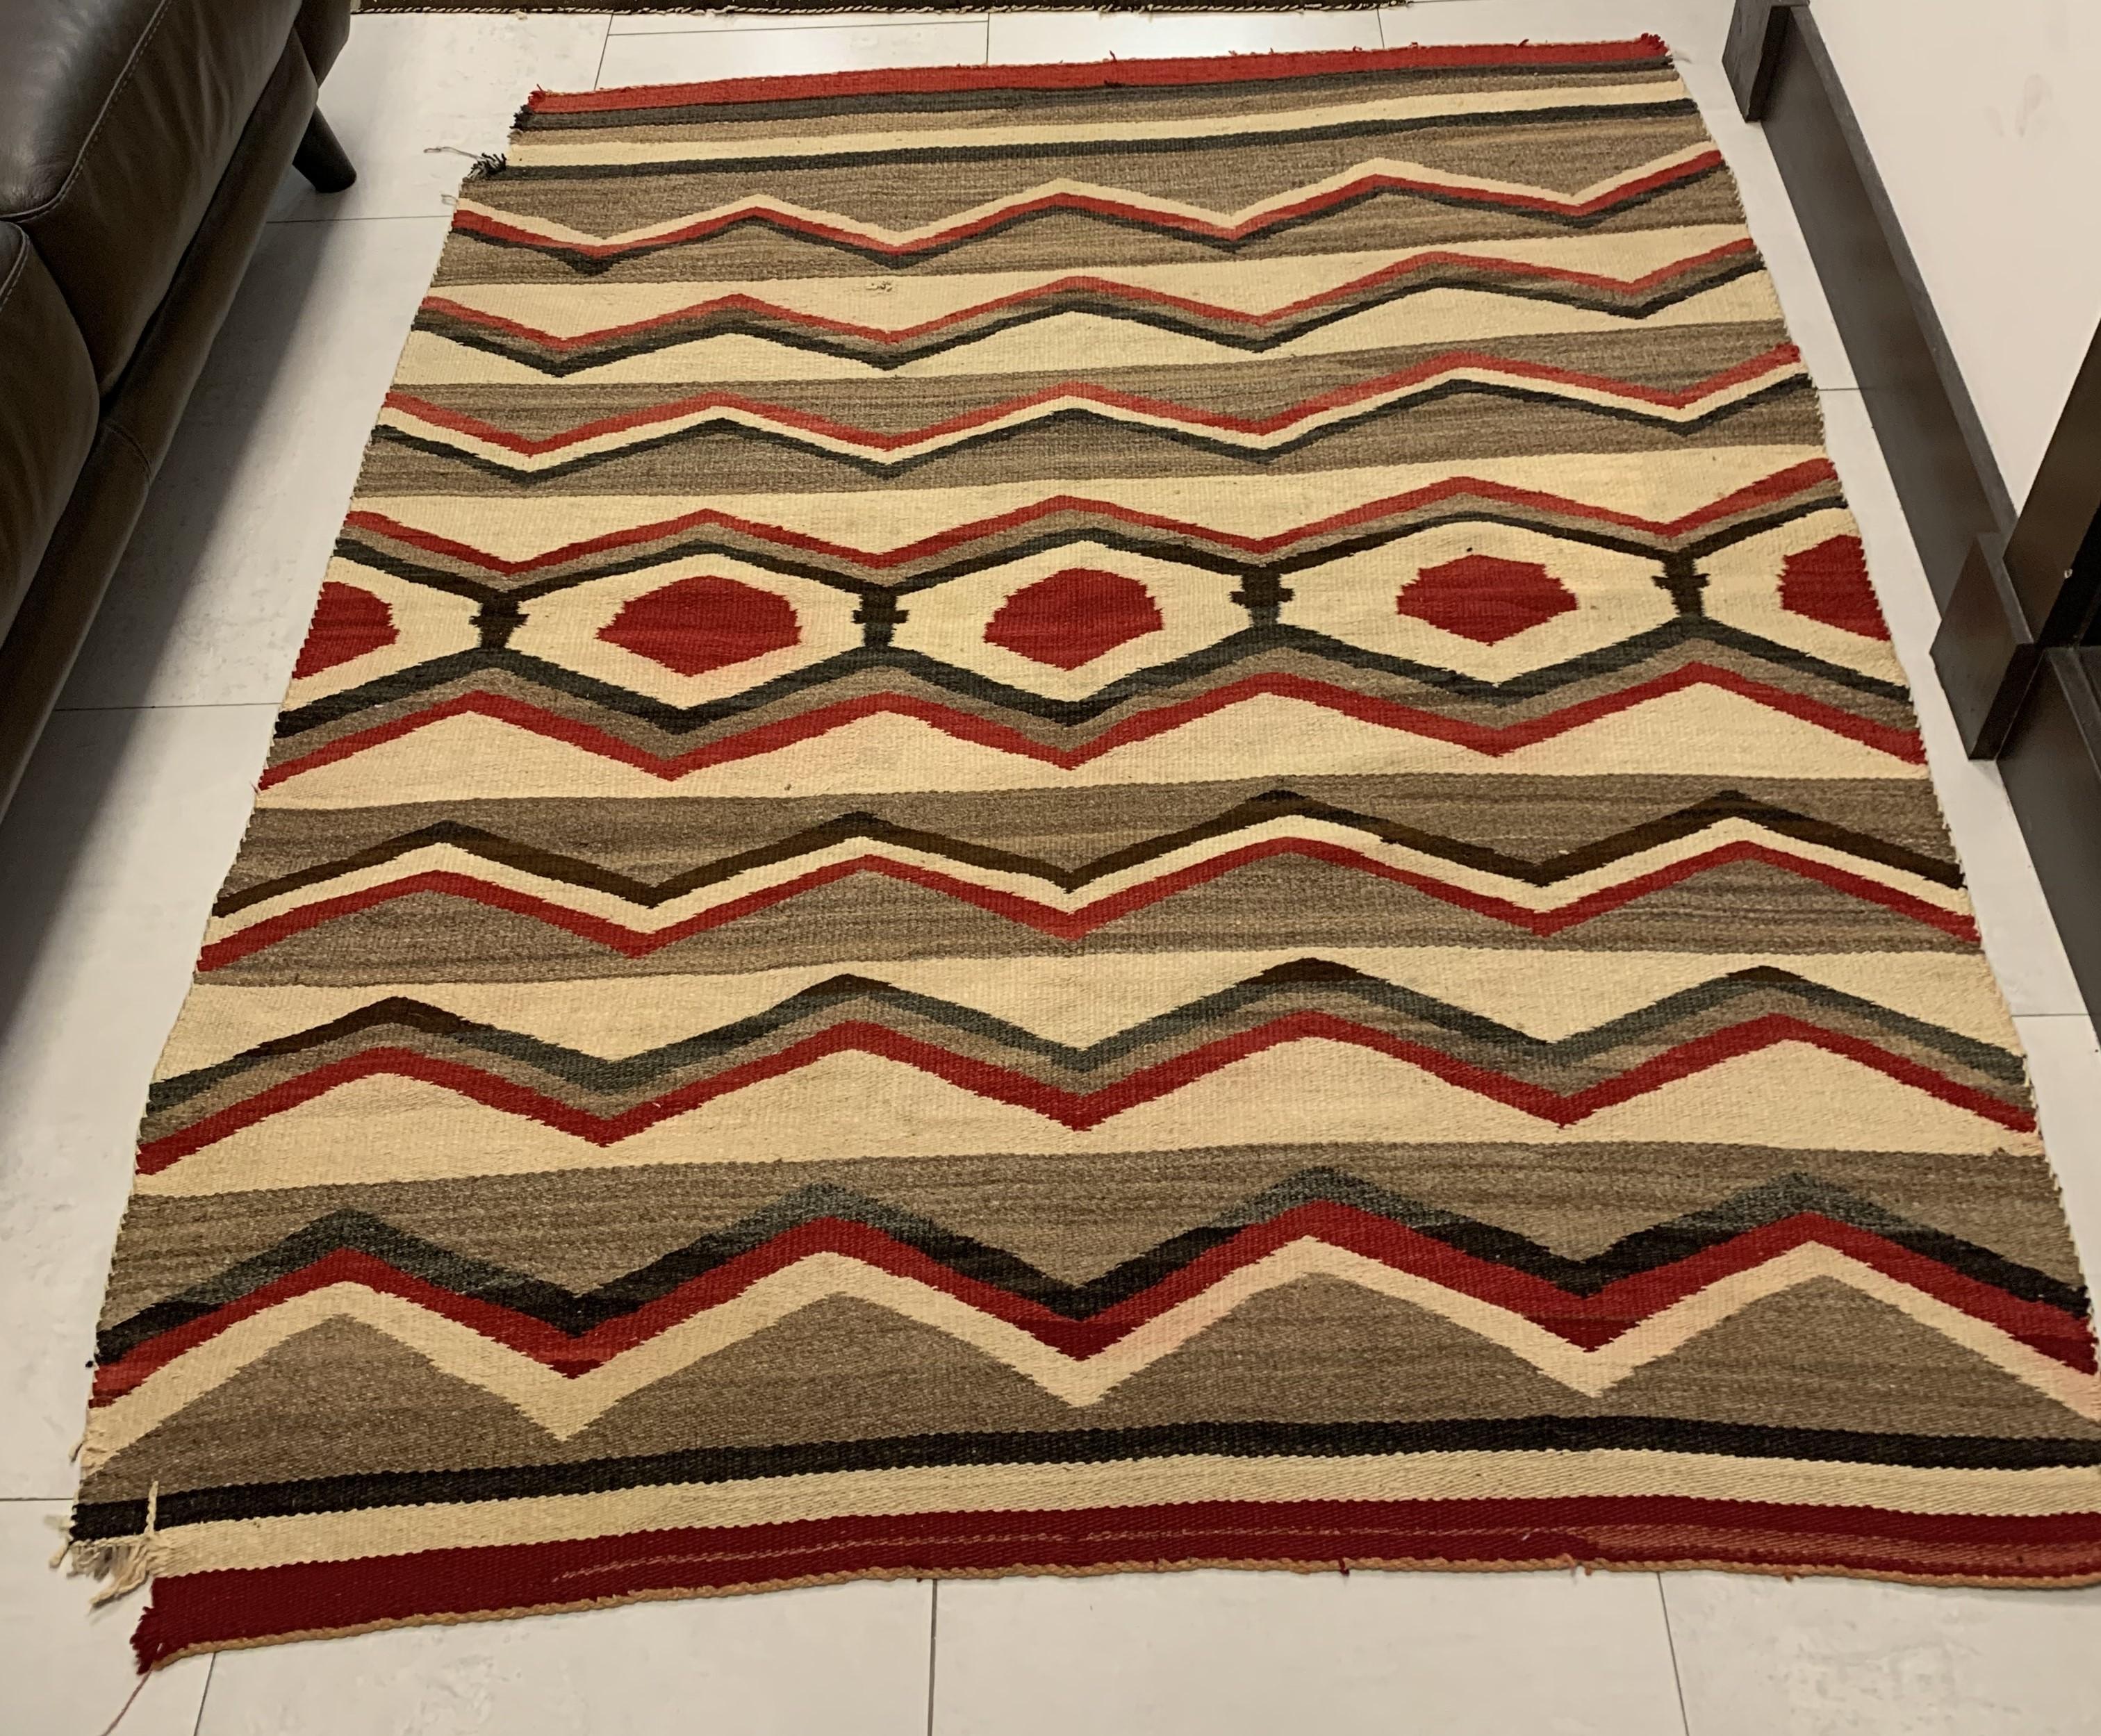 Nous vous présentons notre couverture de tapis Navajo antique fait main, une pièce captivante chargée d'histoire. Mesurant 4,6' x 5,4' (140cm x 164cm), ce tapis du début des années 1900 porte les marques du temps, notamment un coin